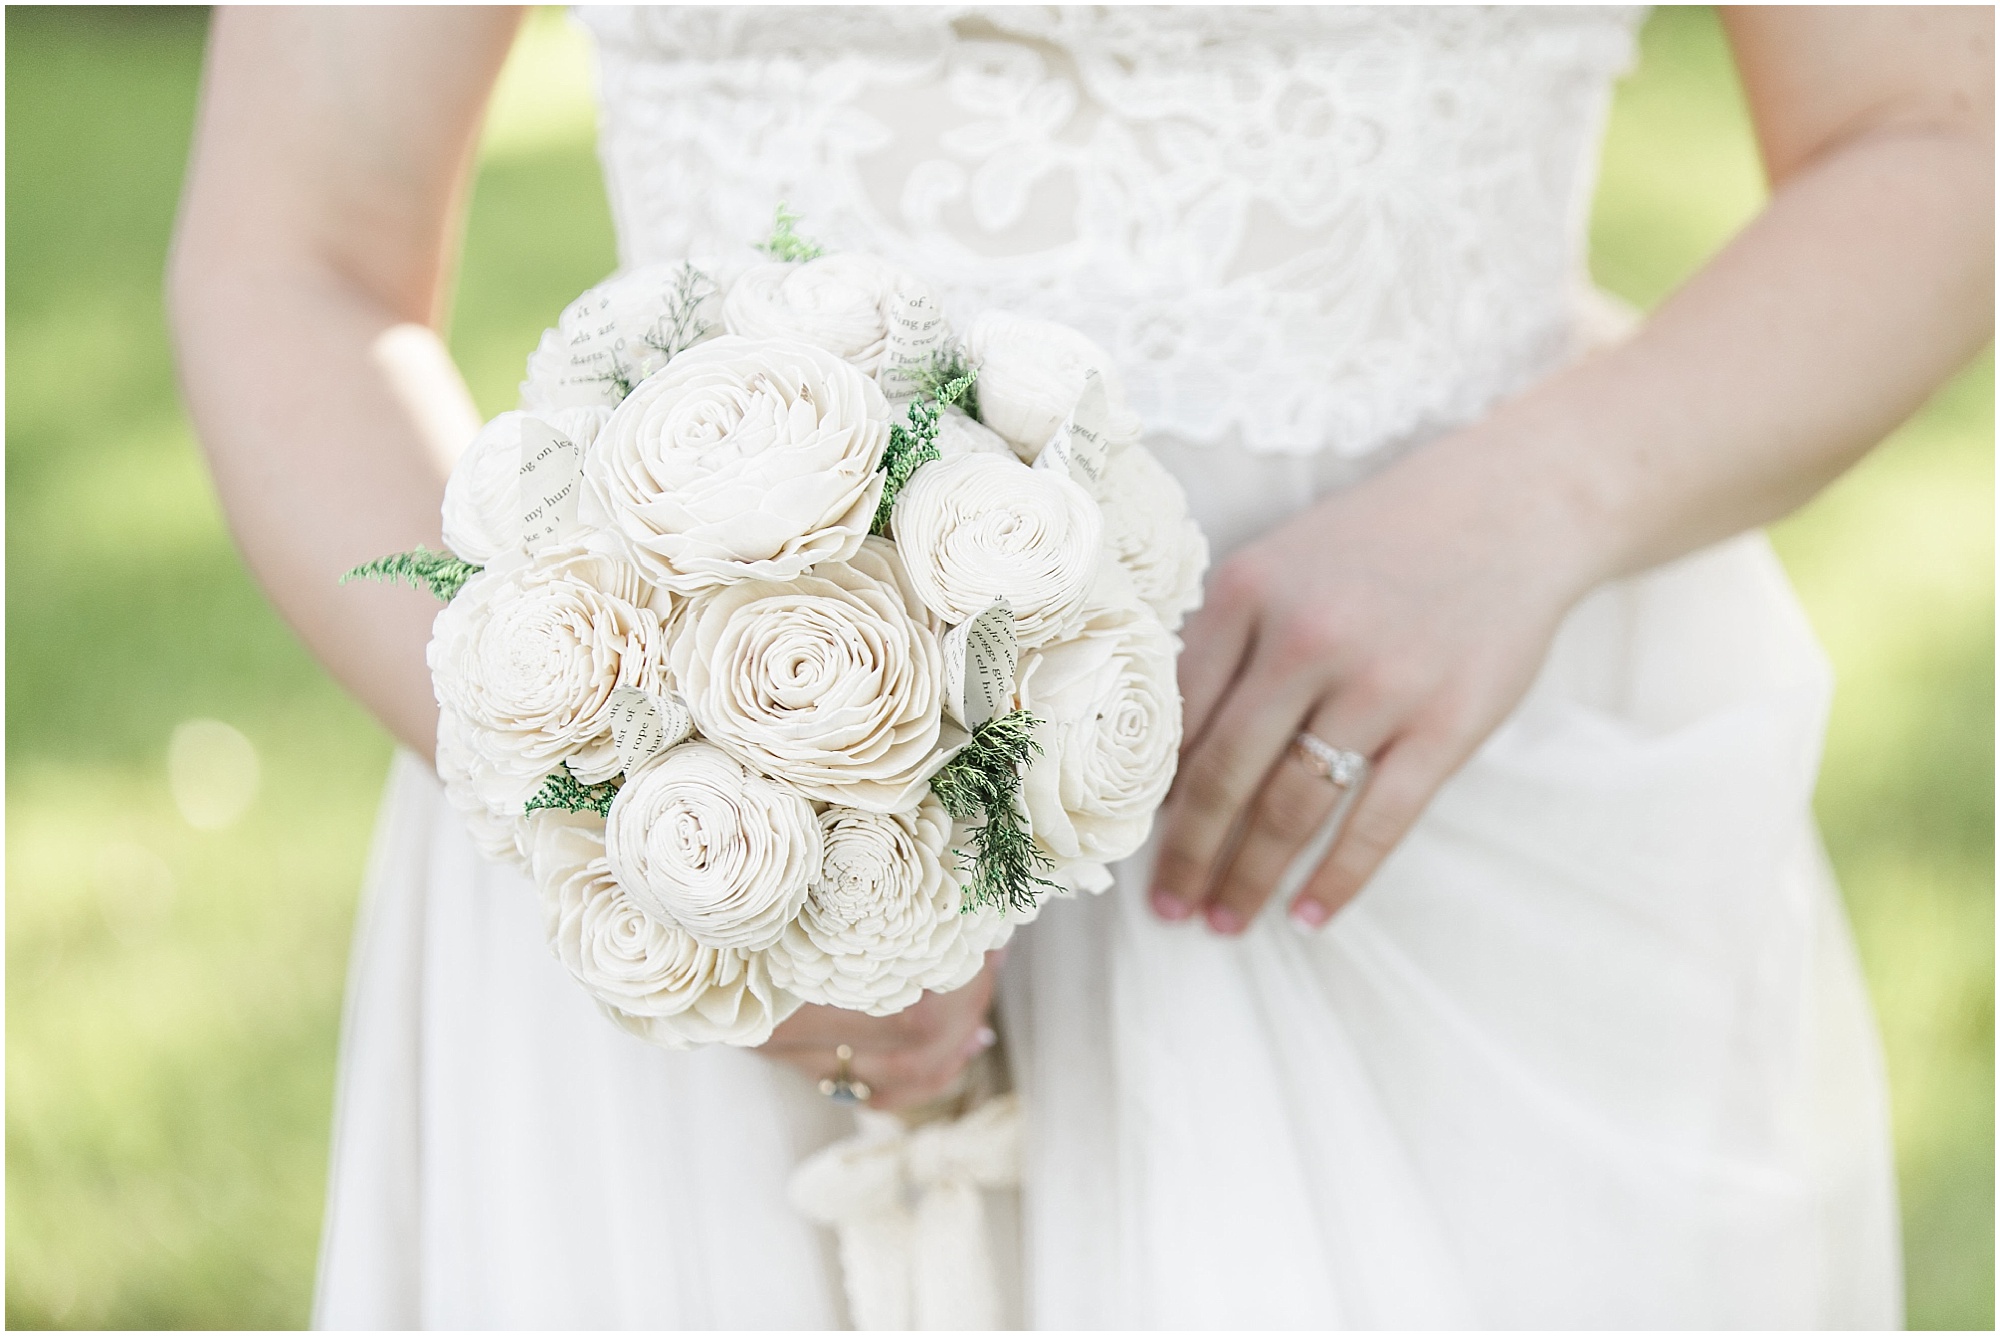 Bride holding her wedding bouquet